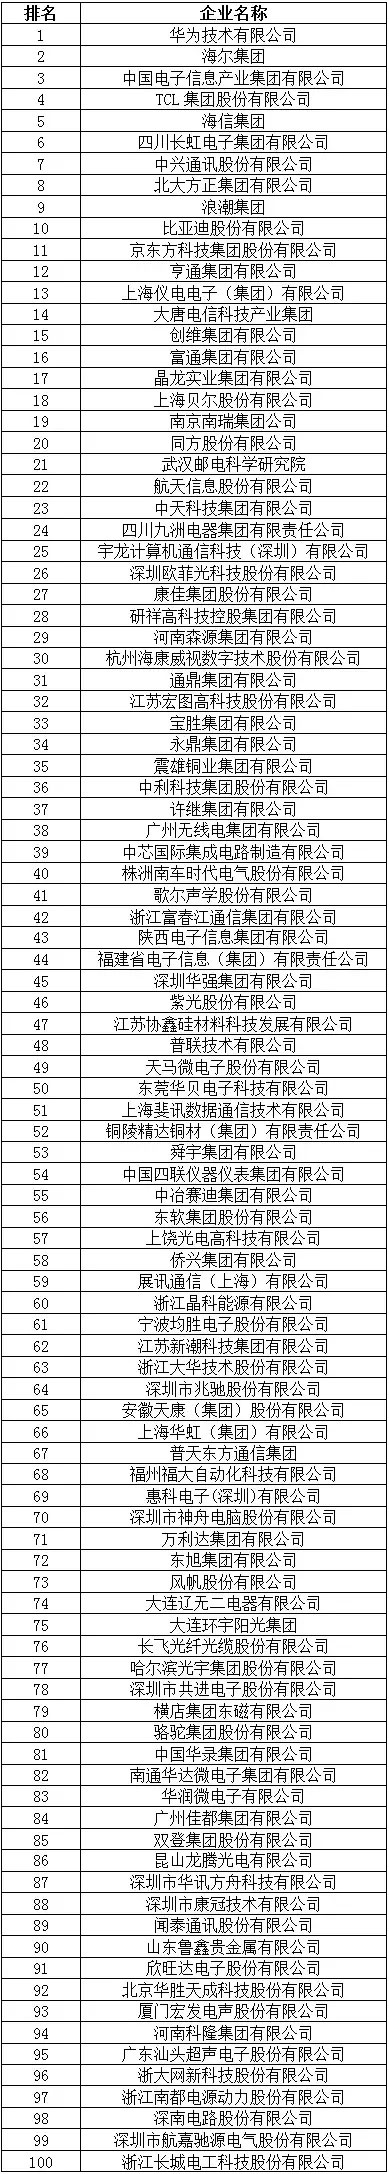 2015年中国电子信息百强企业名单